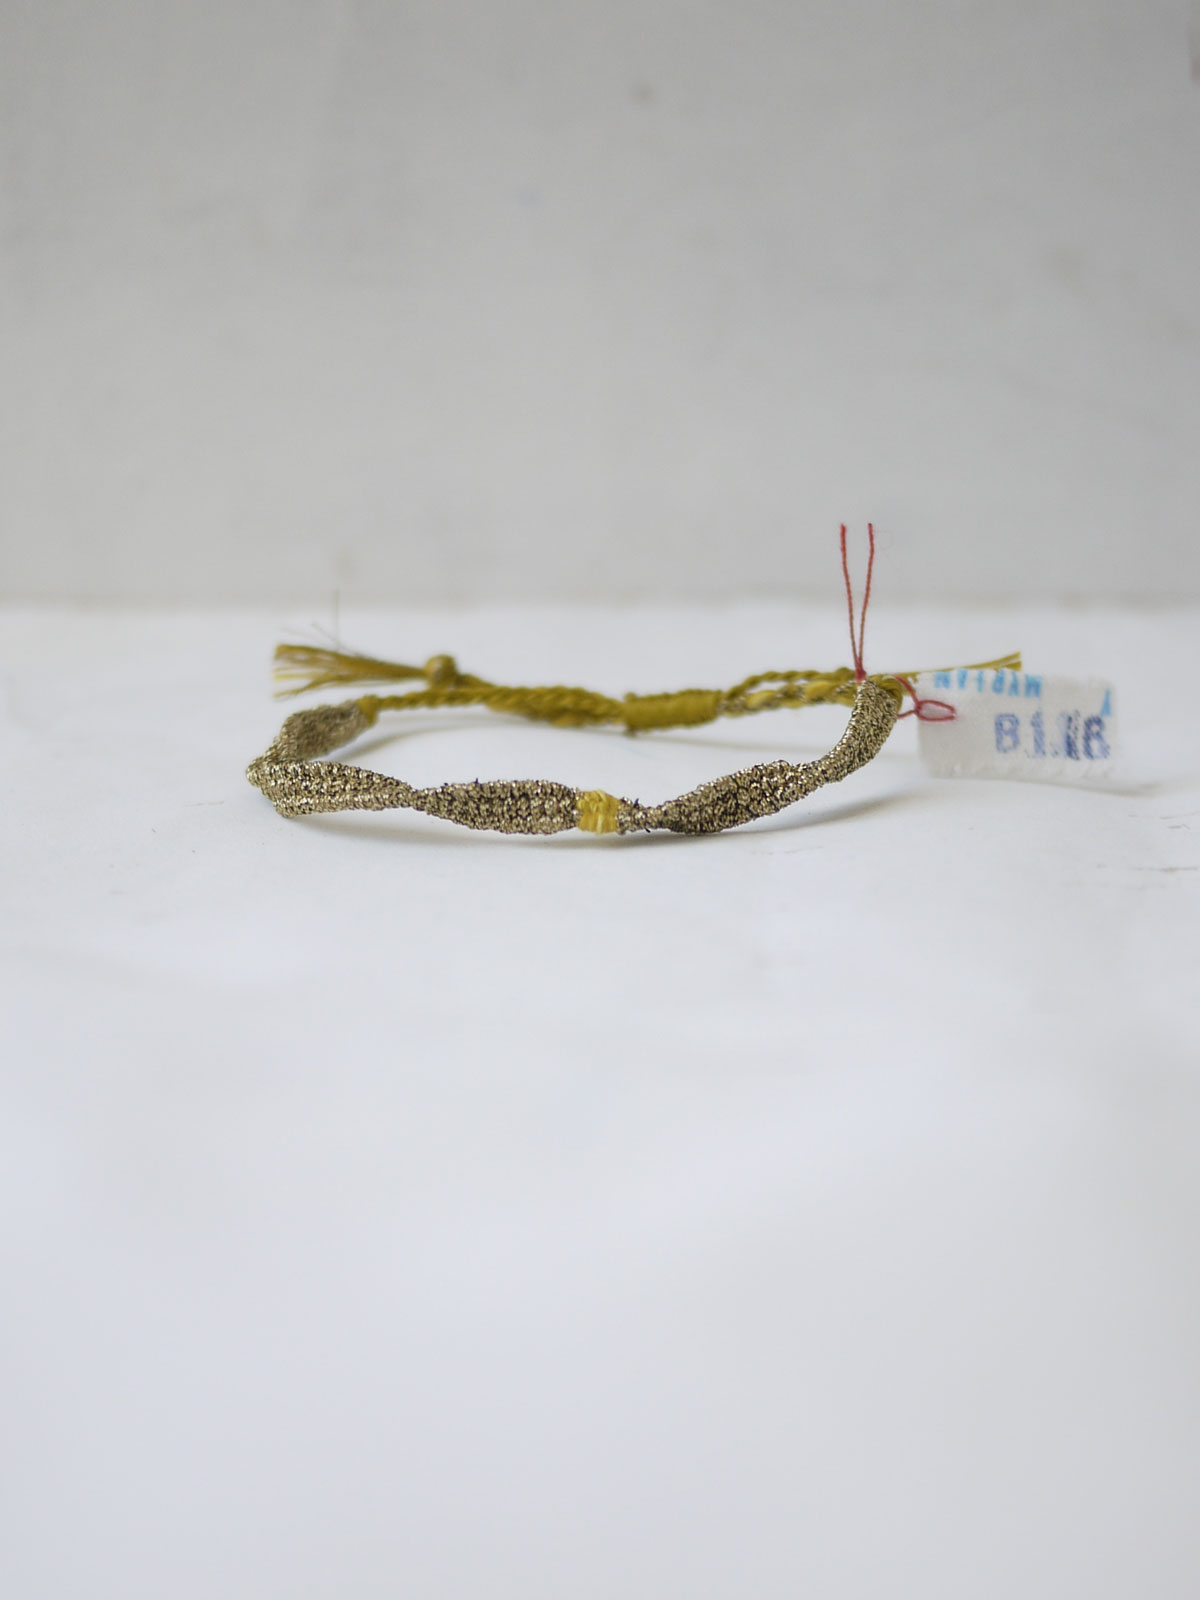 Myriam Balaÿ bracelet handmade LOOM n°116 brindille